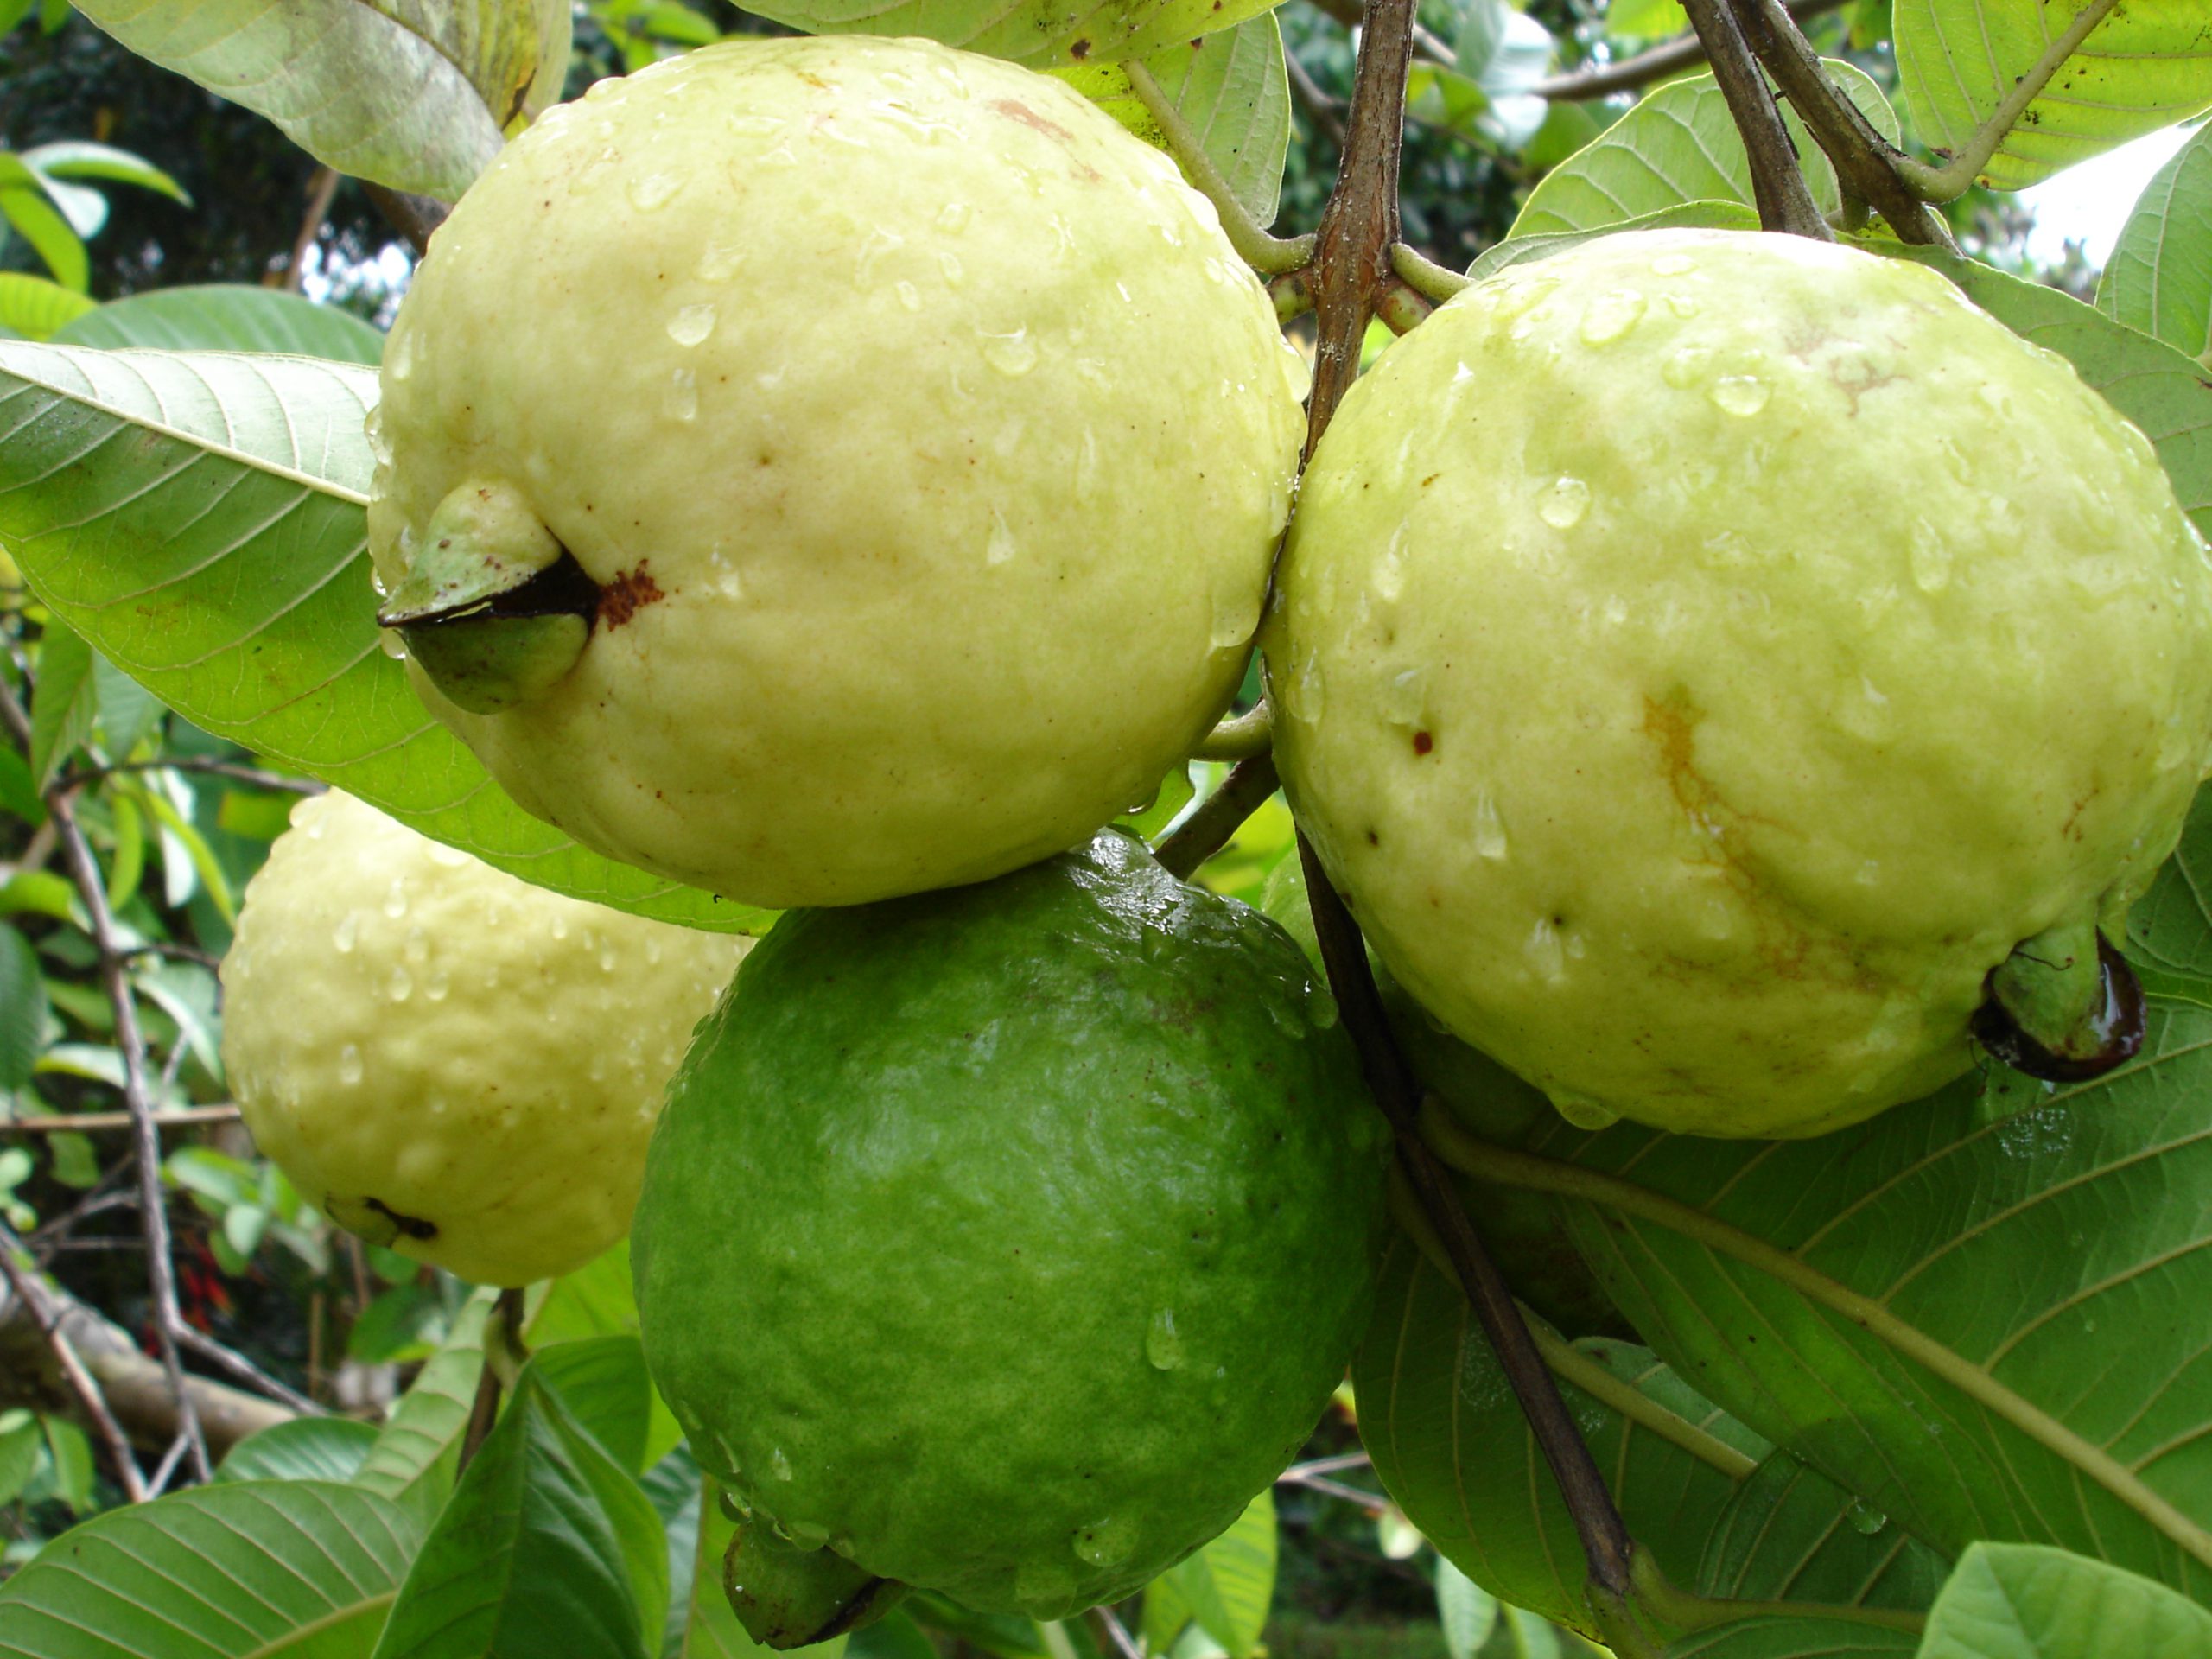 Dwarf fruit trees bangalore